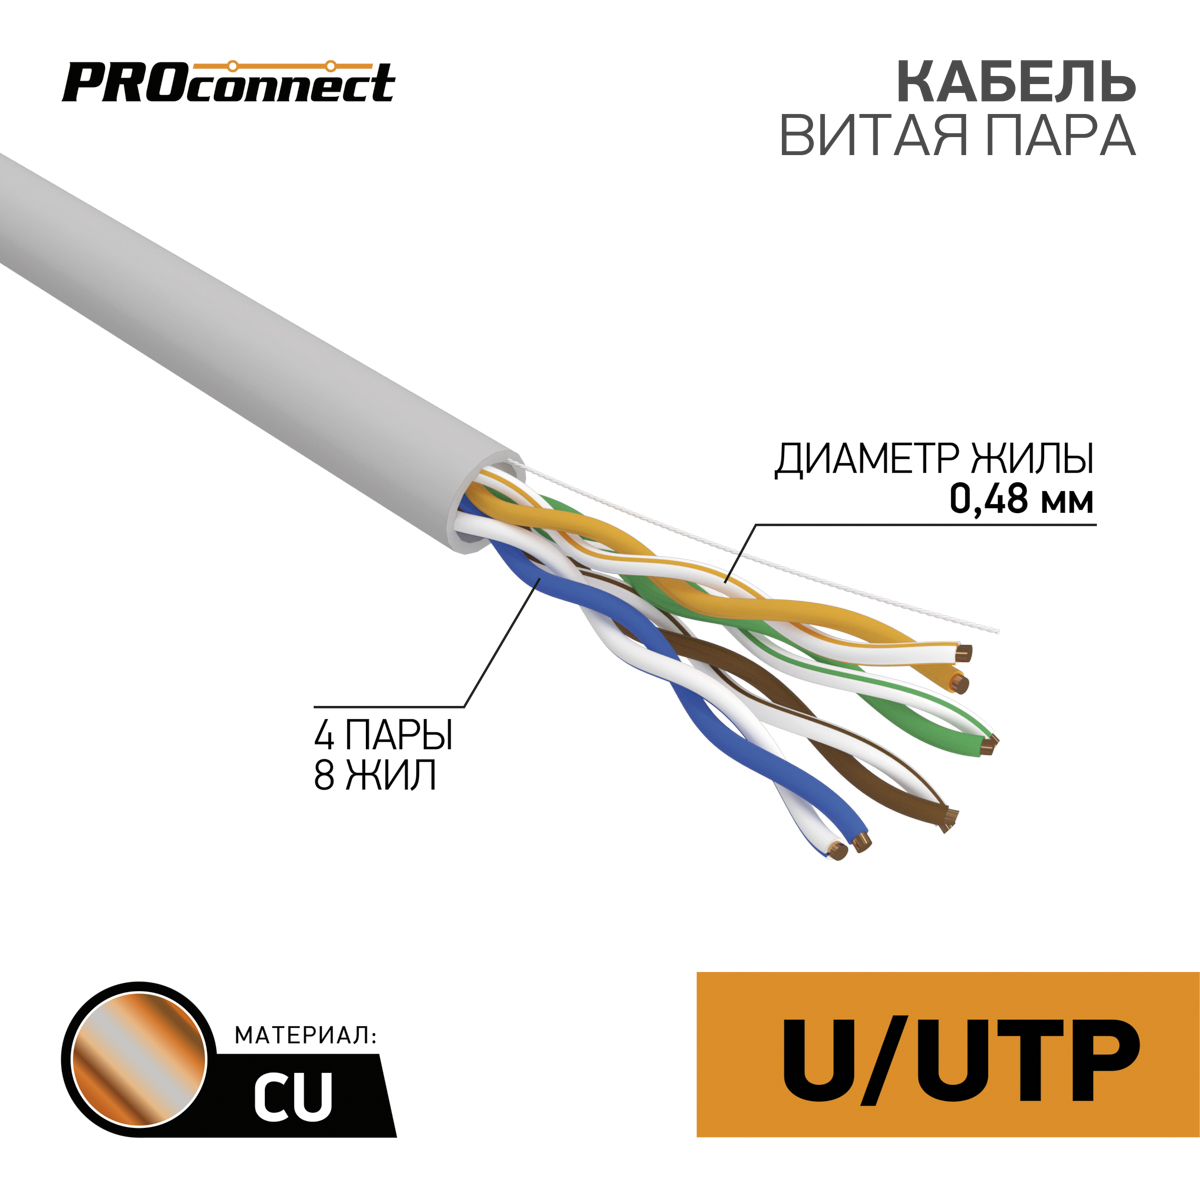 Кабель UTP 4 x 2 x 0,48 мм, cat 5e, 1м., PROCONNECT 